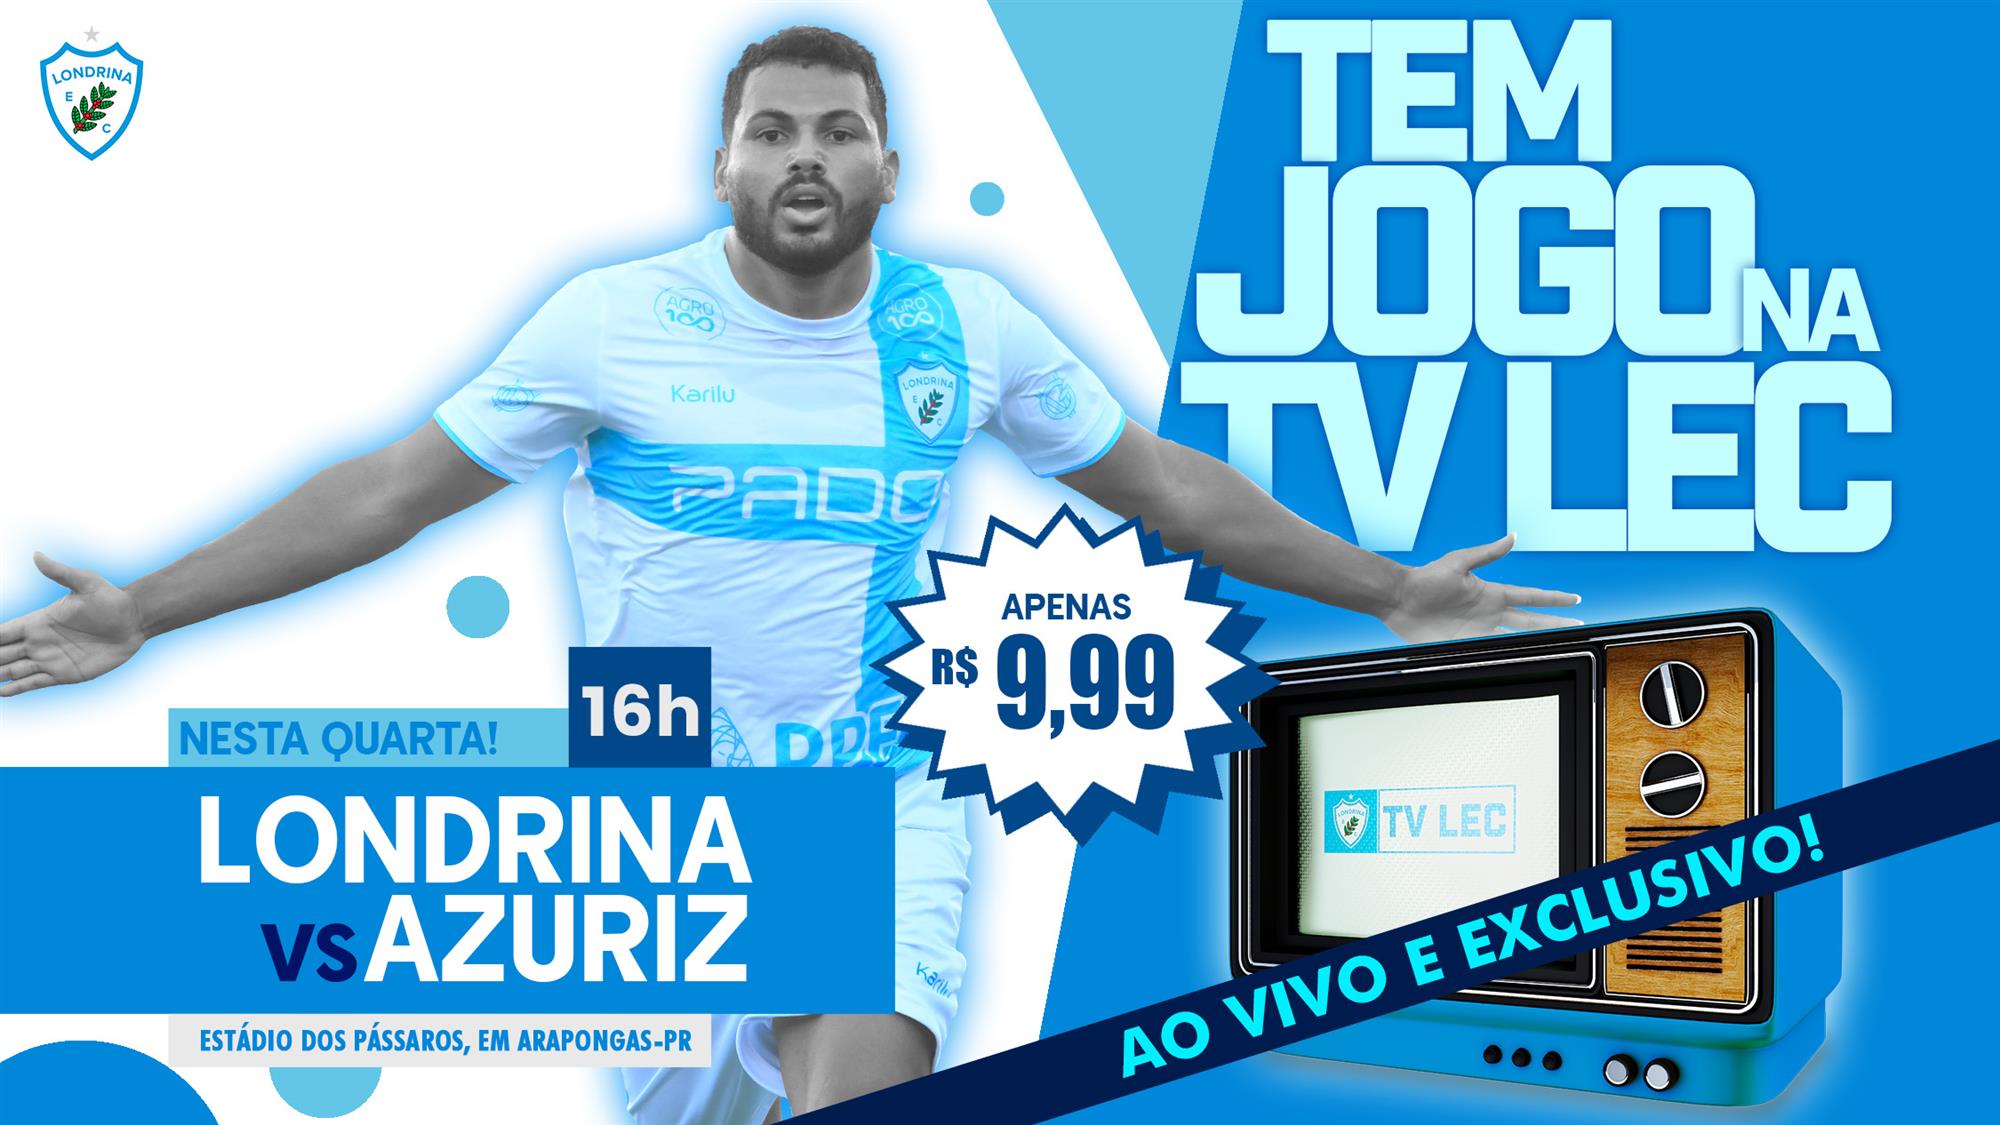 Tem jogo na TV LEC! Adquira o seu ingresso para ver Londrina x Azuriz FC ao vivo!